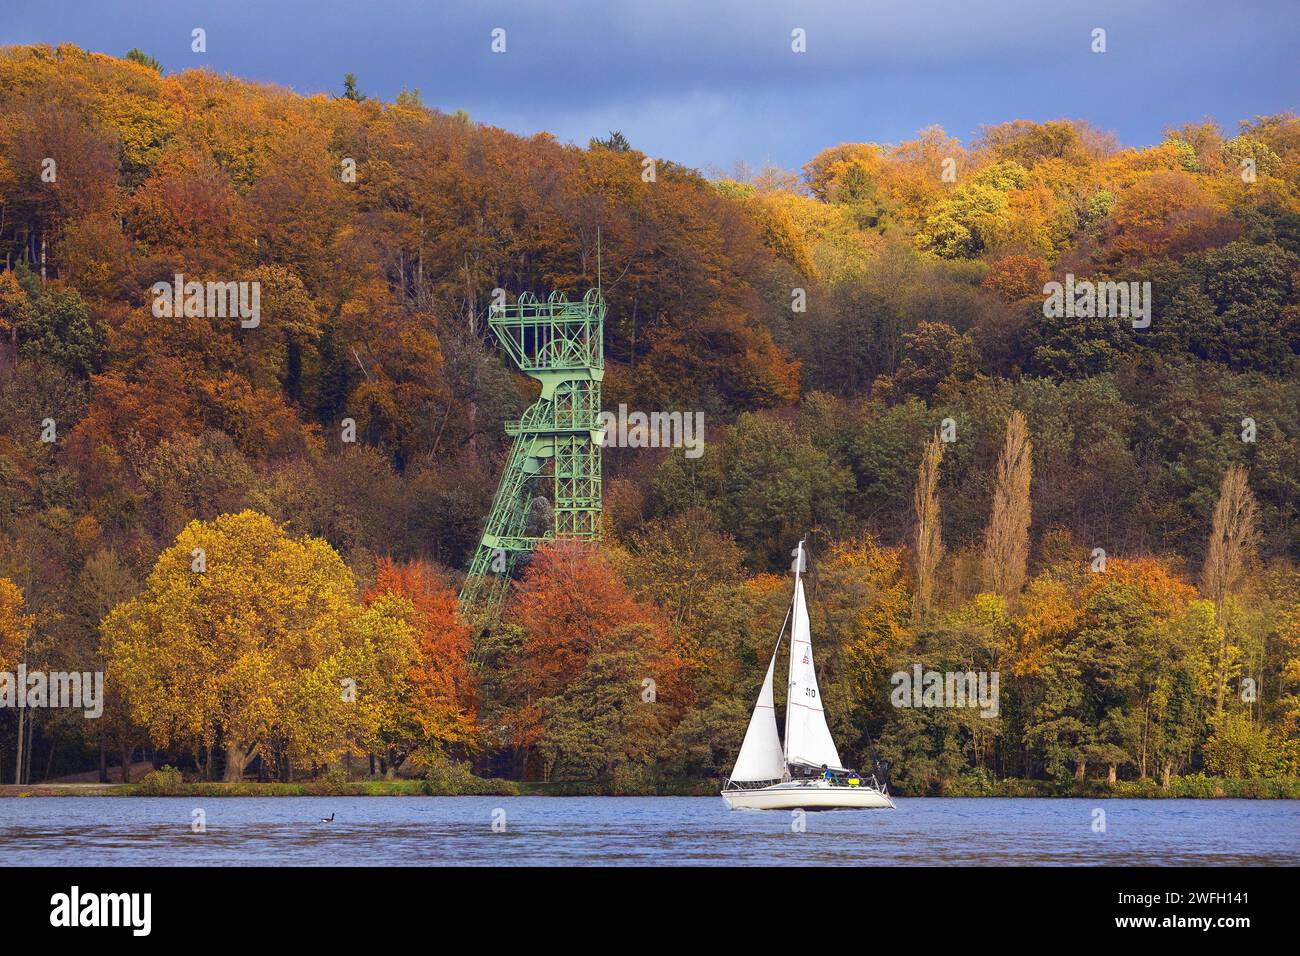 Barca a vela in autunno con il copricapo della miniera di carbone Carl Funke, lago Baldeneysee, Germania, Renania settentrionale-Vestfalia, zona della Ruhr, Essen Foto Stock